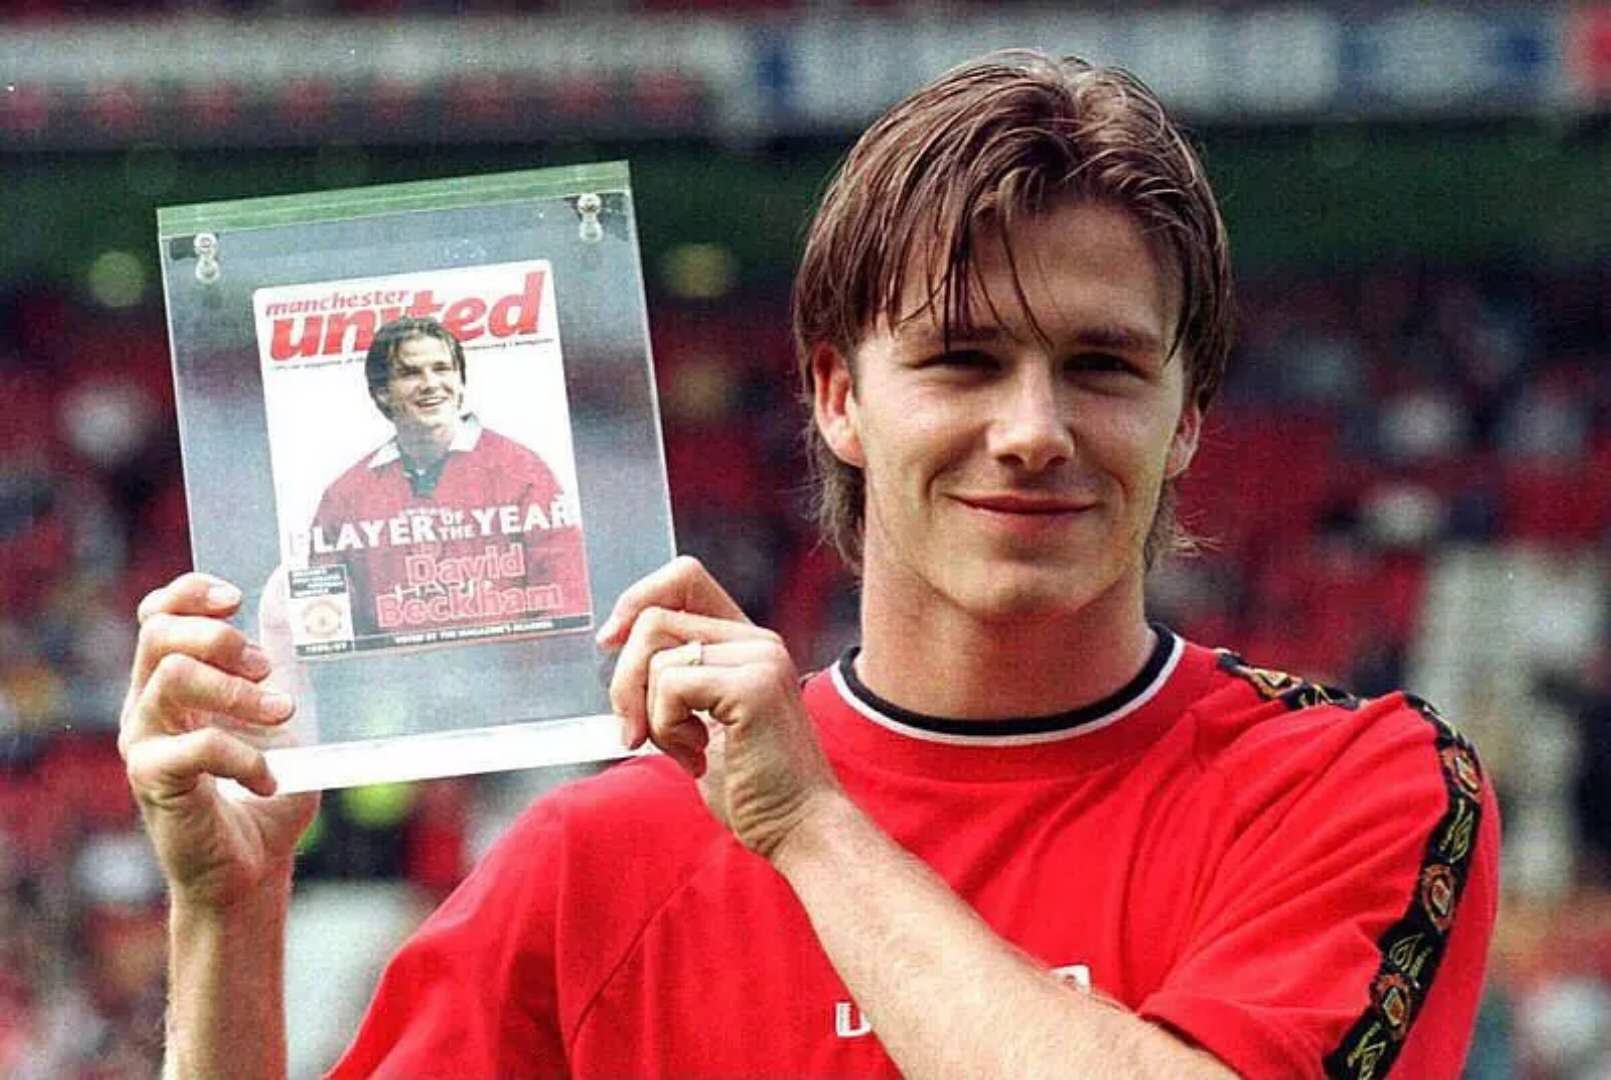 David Beckham Manchester United Wallpapers - Top Free David Beckham ...